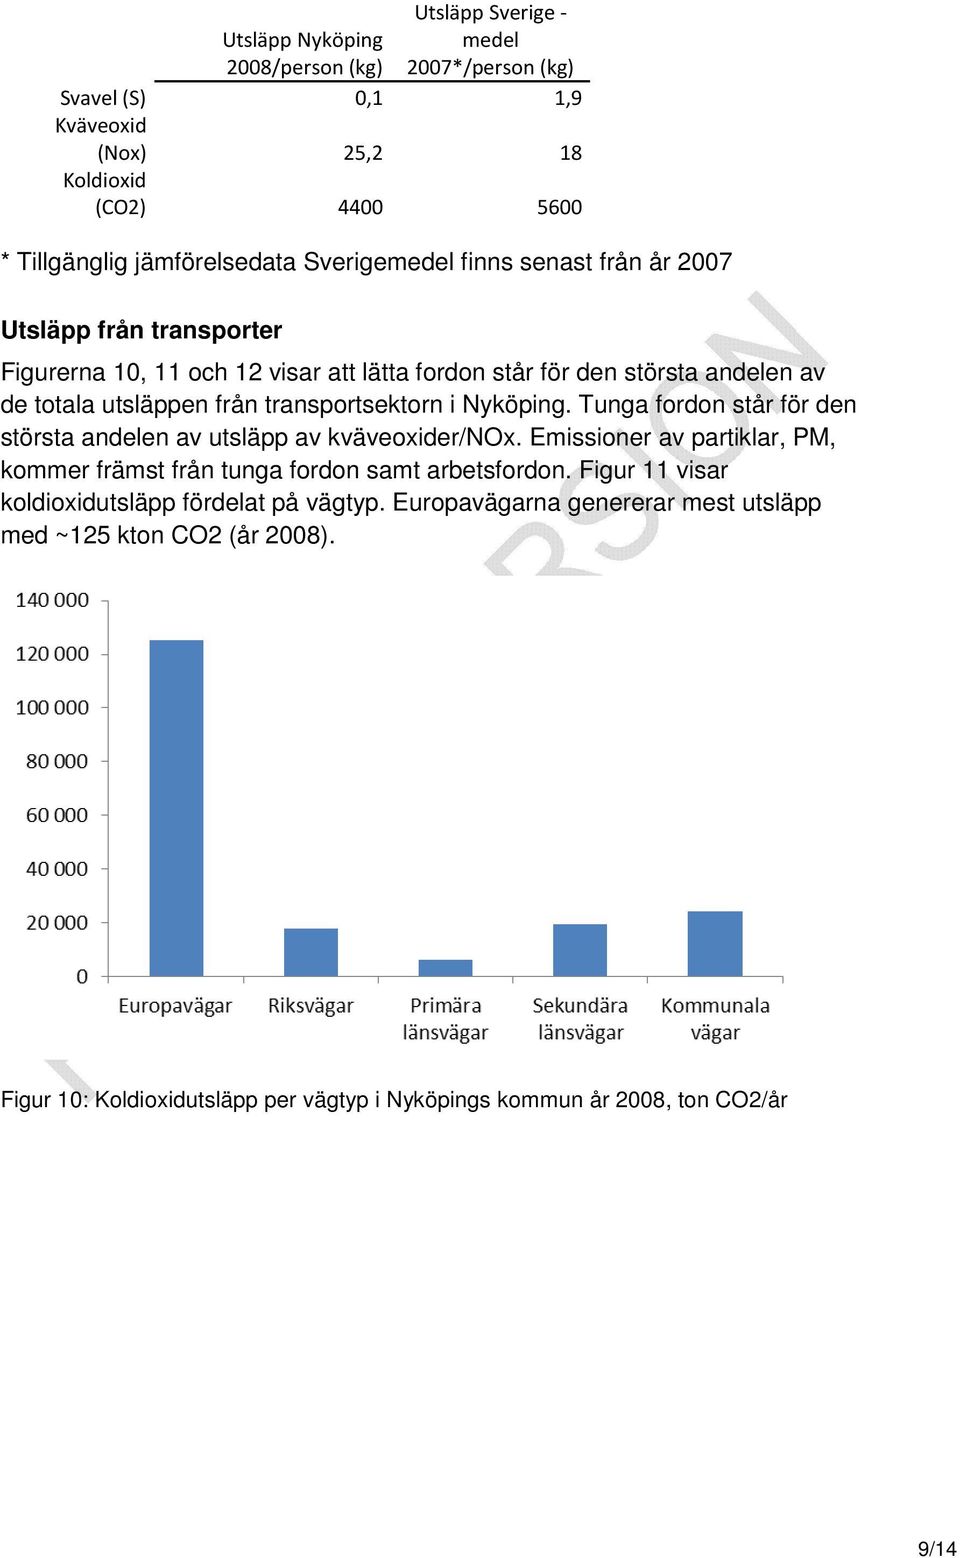 transportsektorn i Nyköping. Tunga fordon står för den största andelen av utsläpp av kväveoxider/nox. Emissioner av partiklar, PM, kommer främst från tunga fordon samt arbetsfordon.